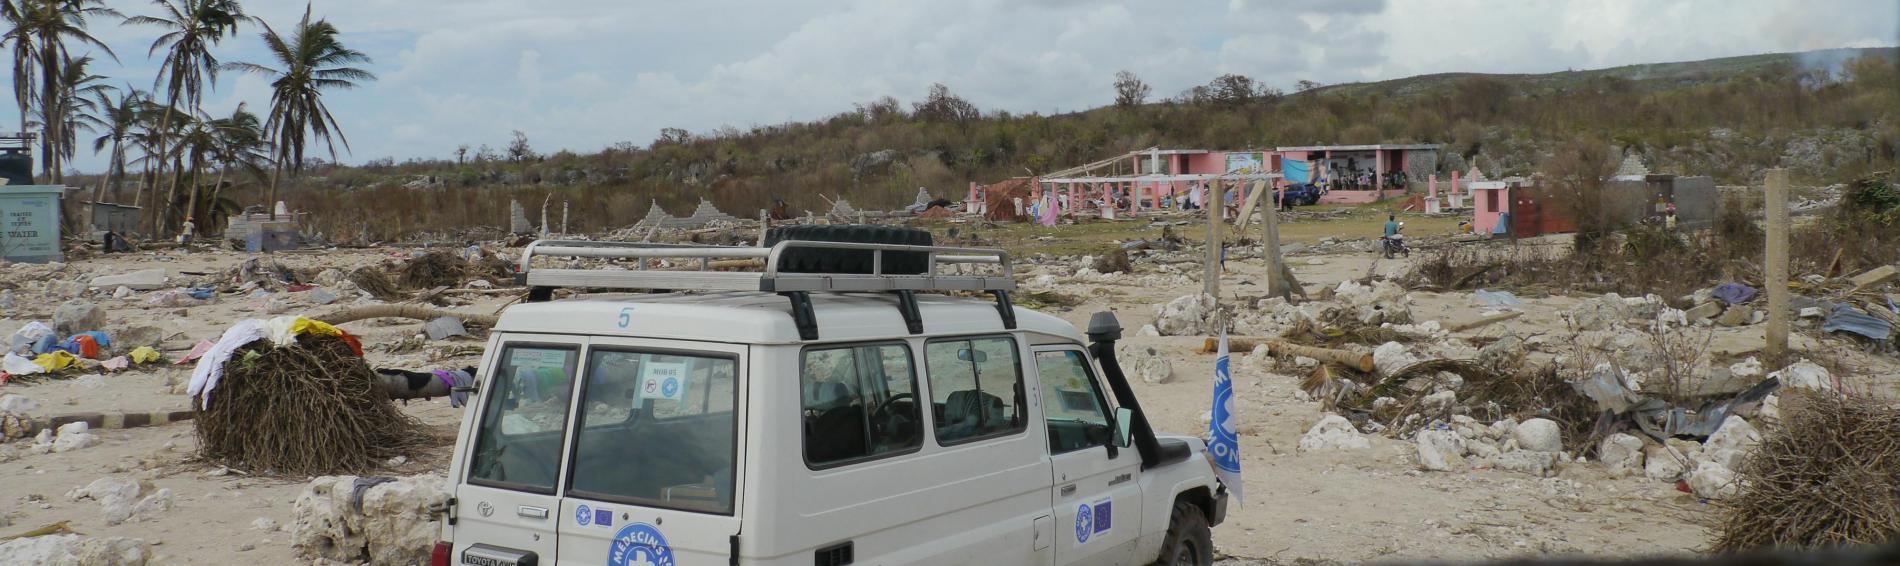 Een wagen met het logo van Dokters van de Wereld staat geparkeerd temidden van een verwoest landschap, huizen in puin, ontbrekende daken, sommige helemaal met de grond gelijk gemaakt.